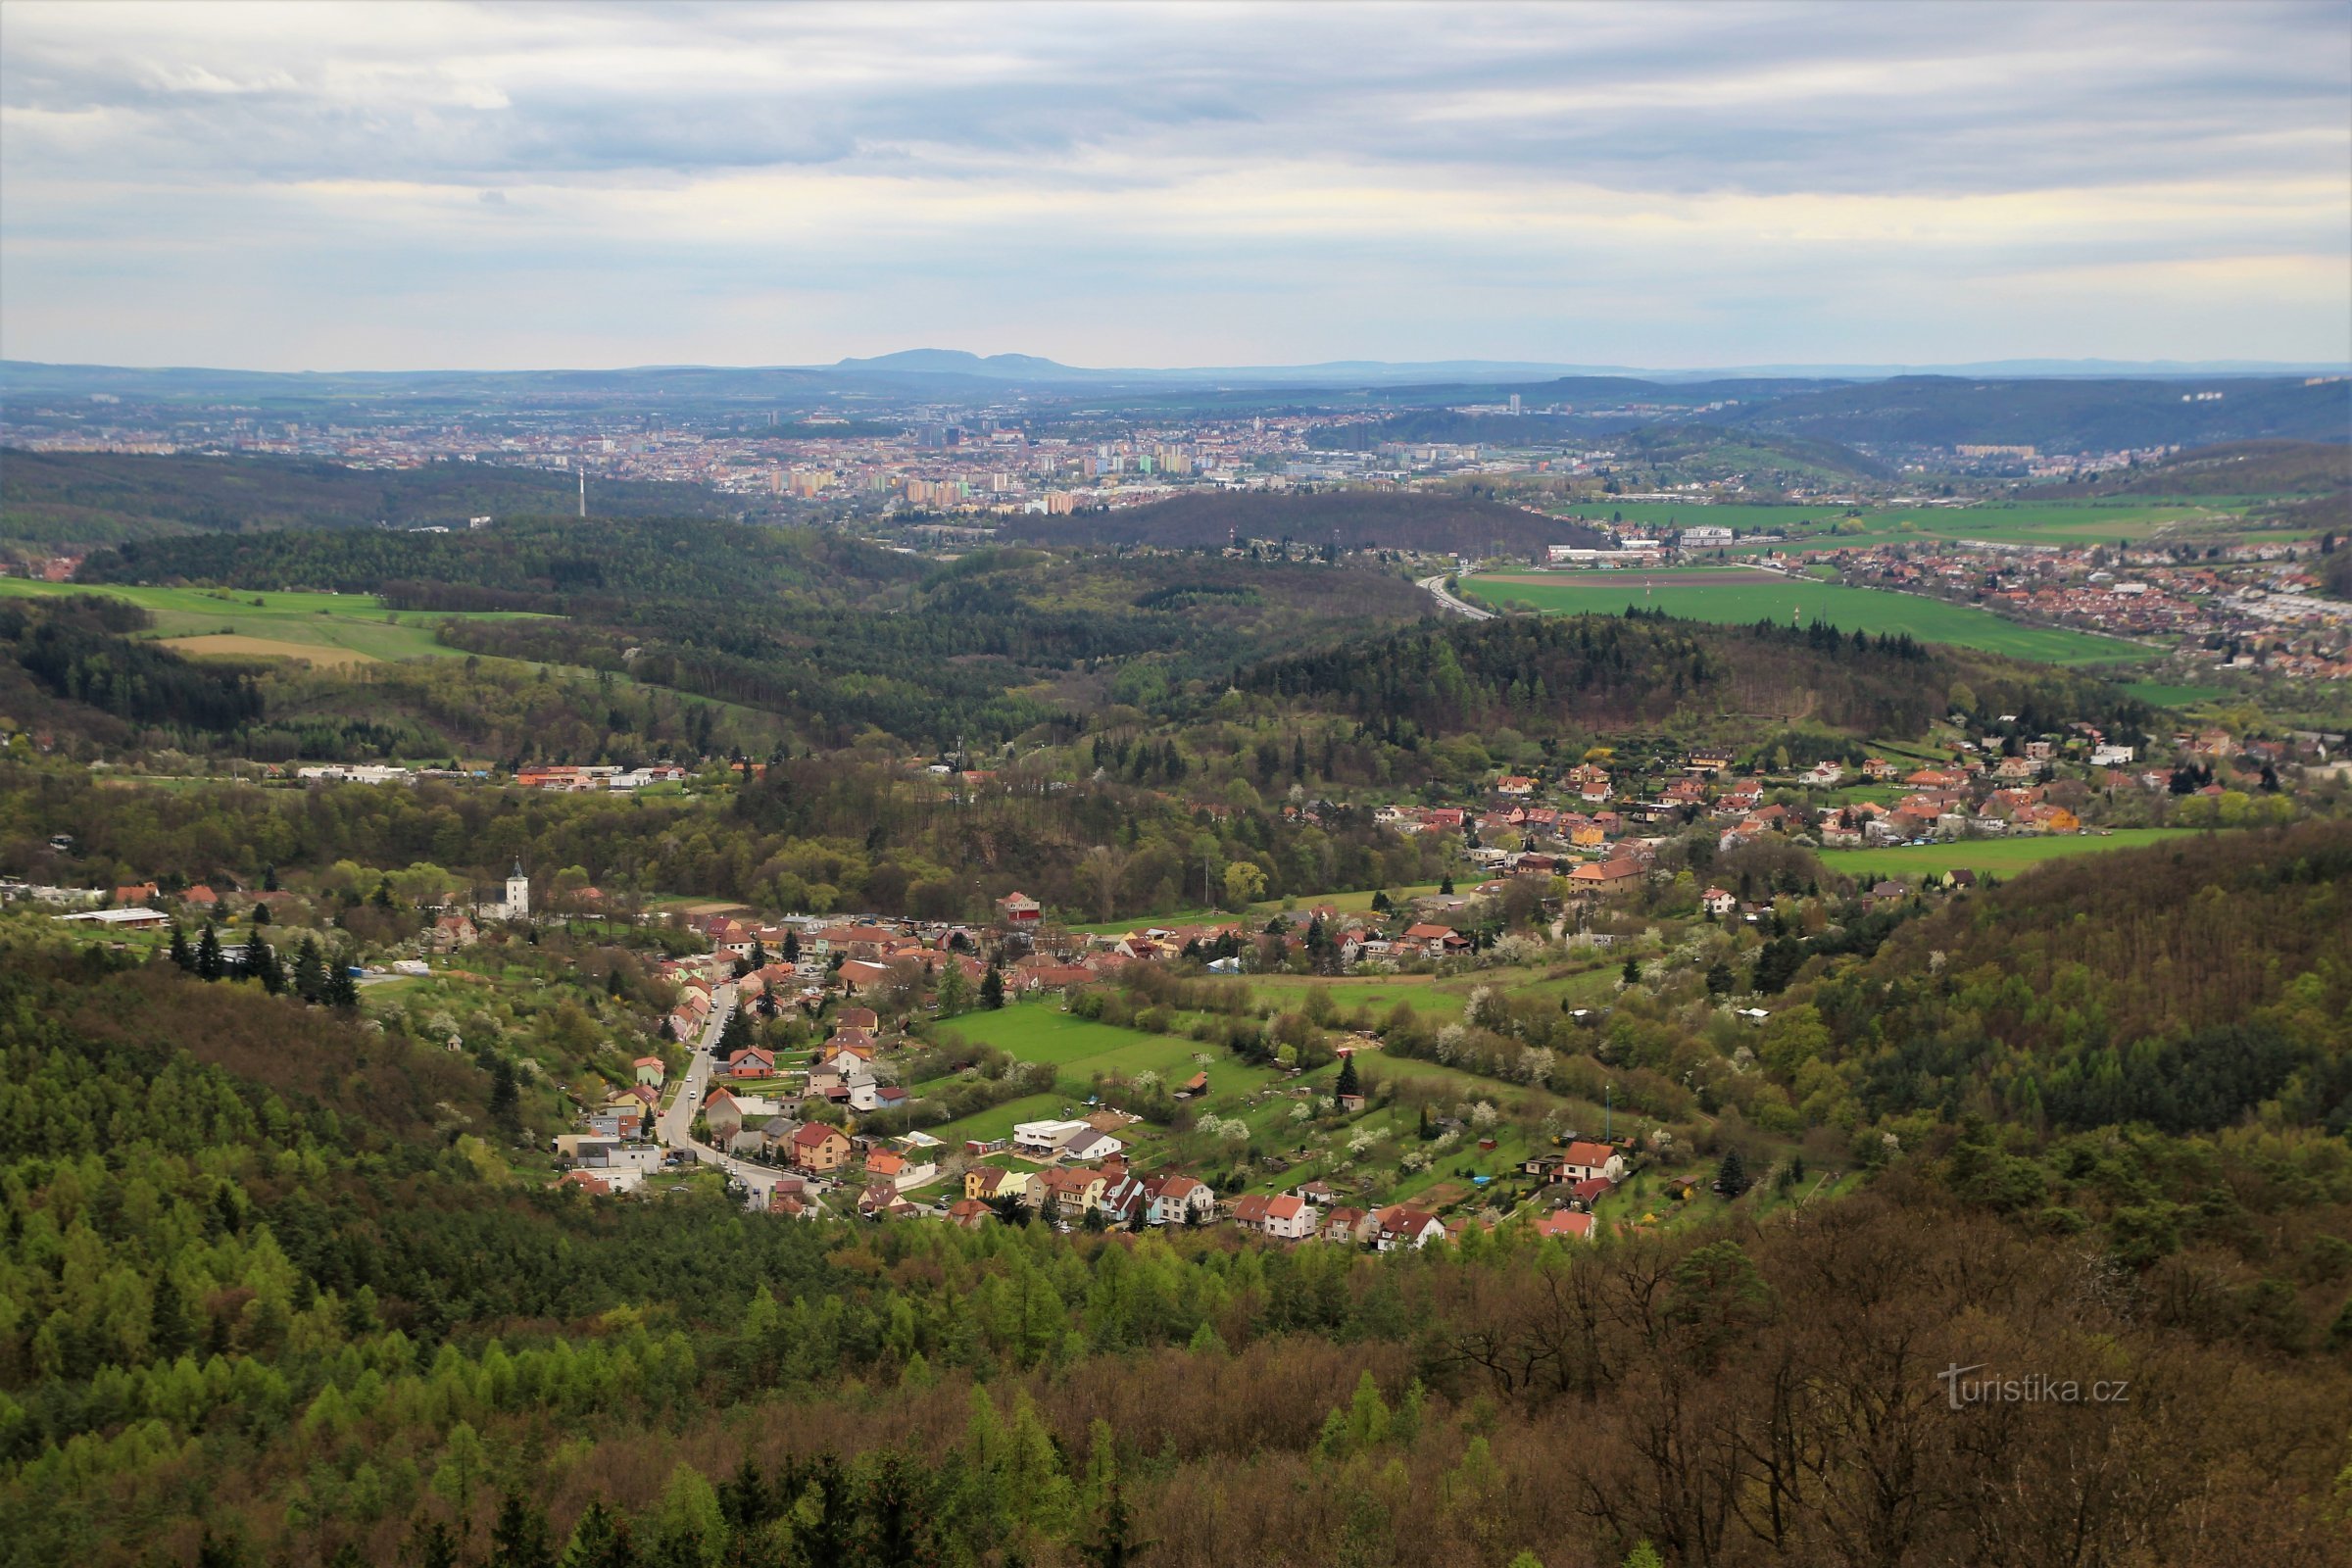 Udsigt mod Brno, Pálava højderyg i horisonten